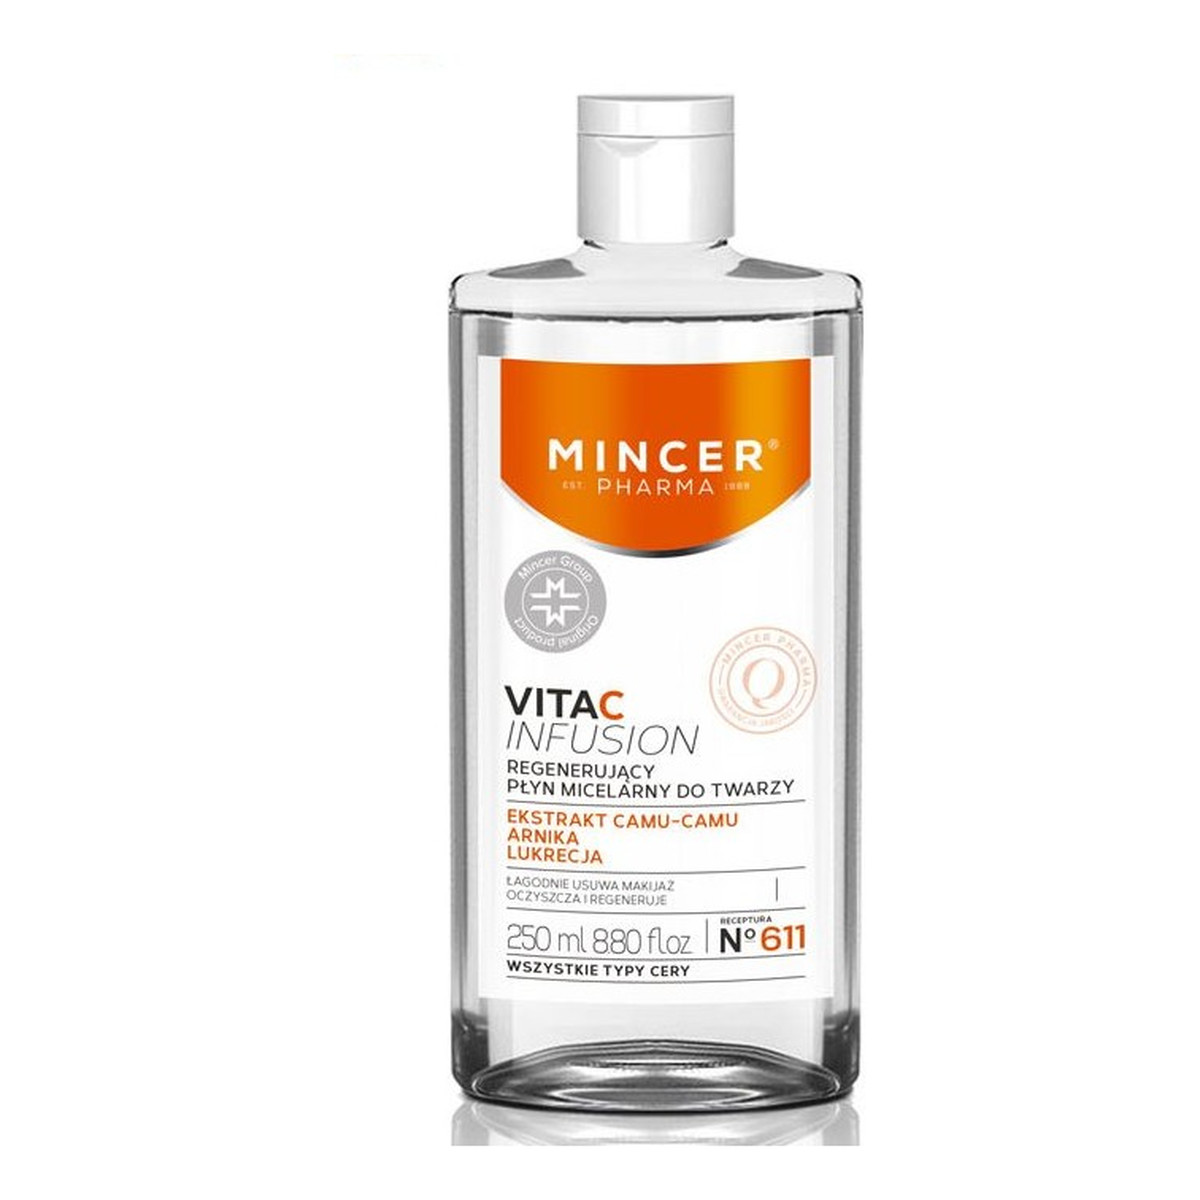 Mincer Pharma Vita C Infusion Płyn micelarny regenerujący do twarzy 611 250ml